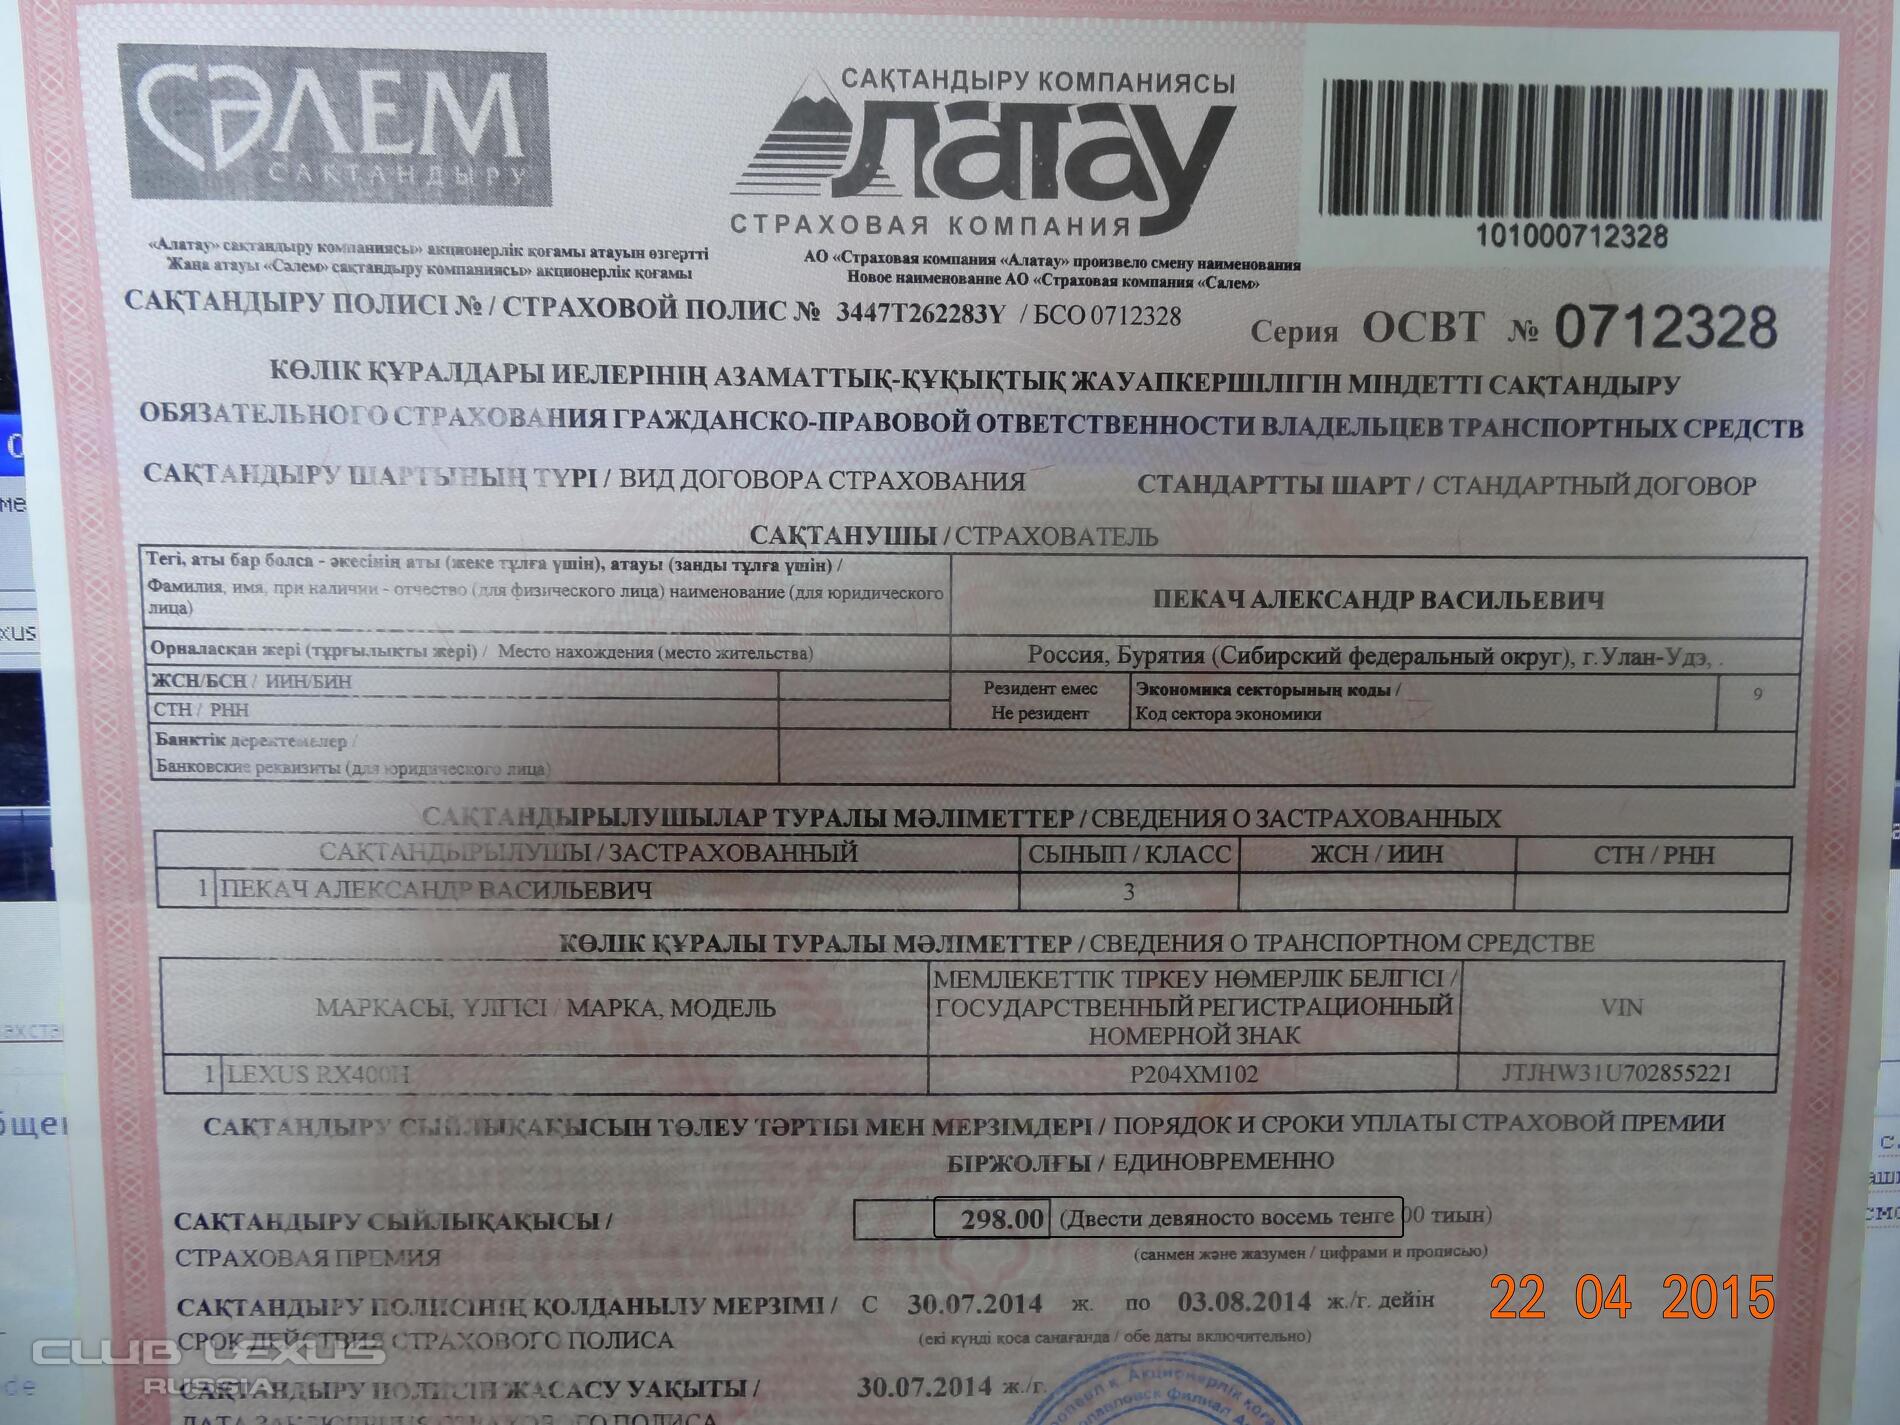 Цена Страховки Российского Авто В Казахстане